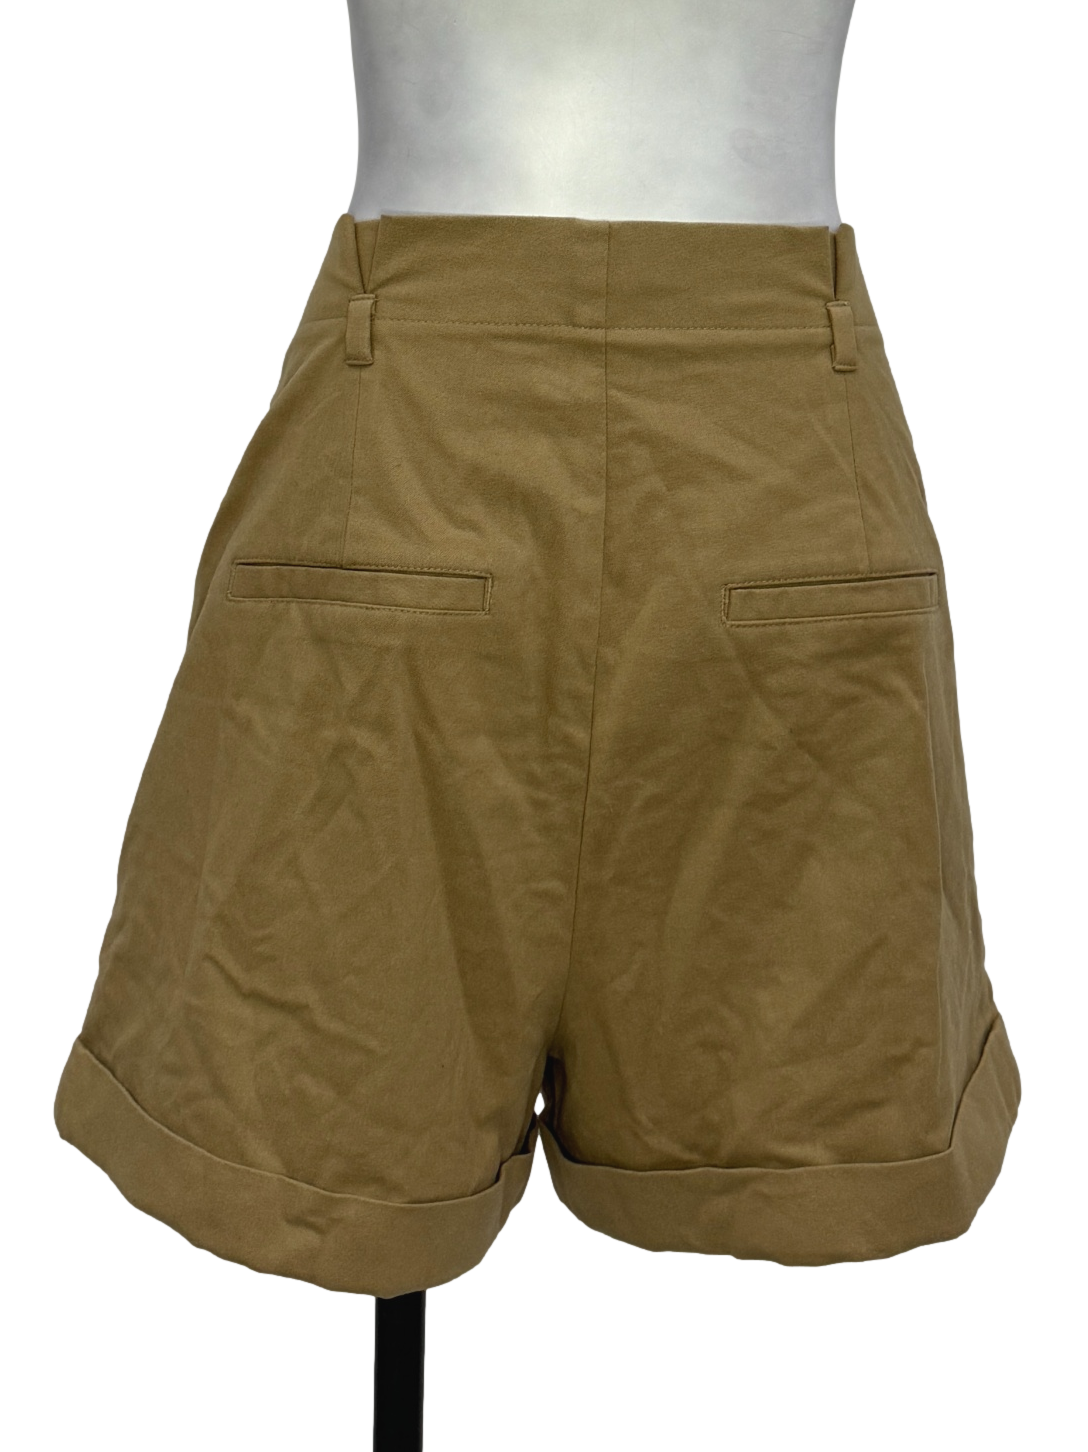 Tawny Brown Shorts